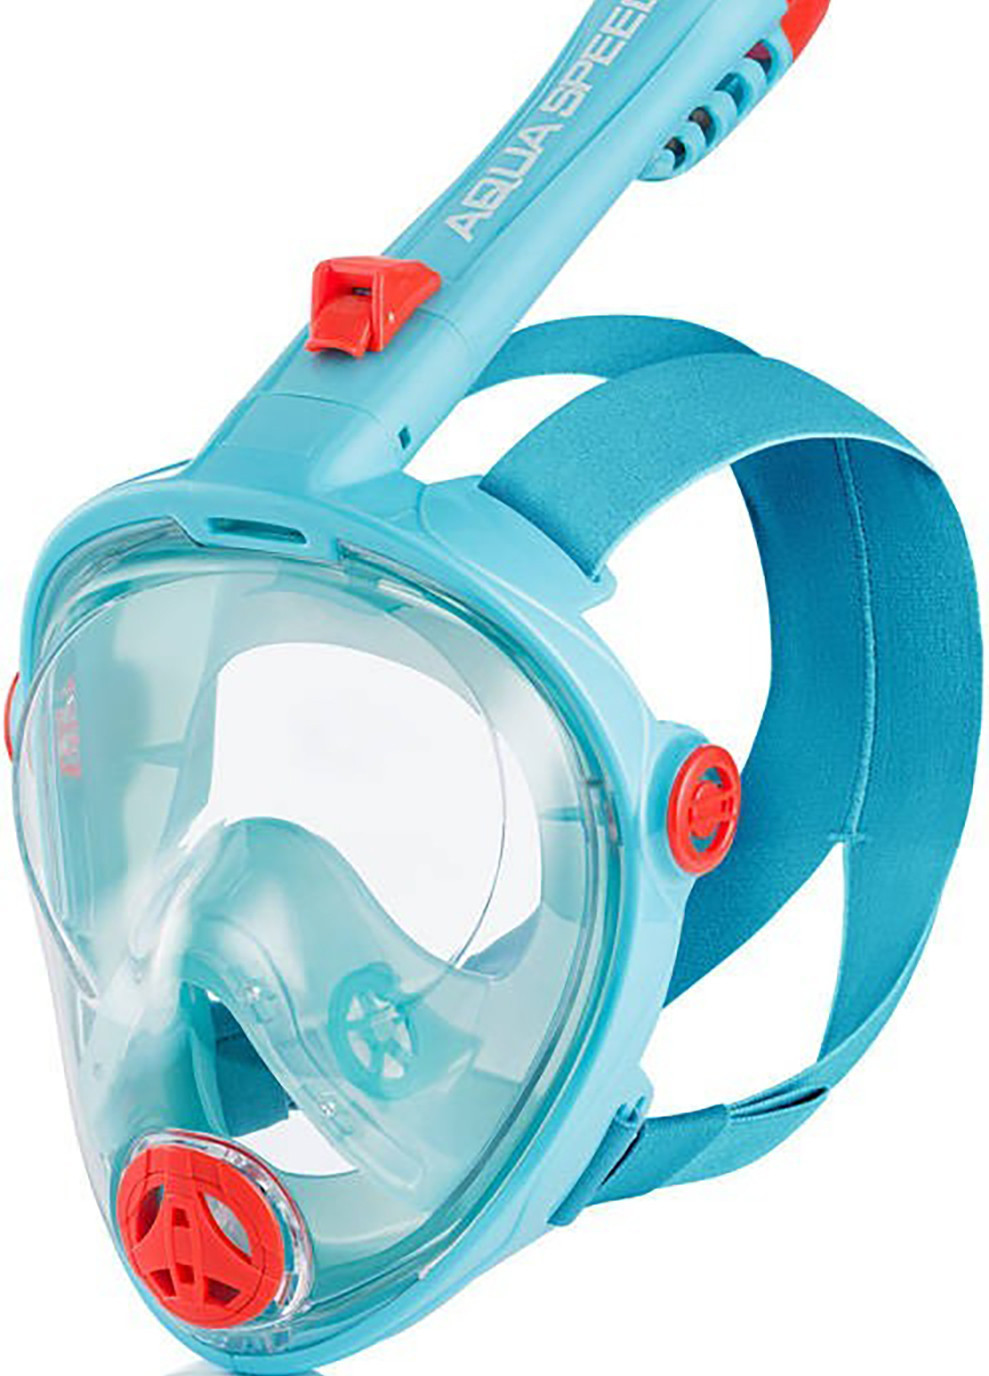 Повнолицева маска SPECTRA 2.0 бірюзовий, дитяча L Aqua Speed (260597516)